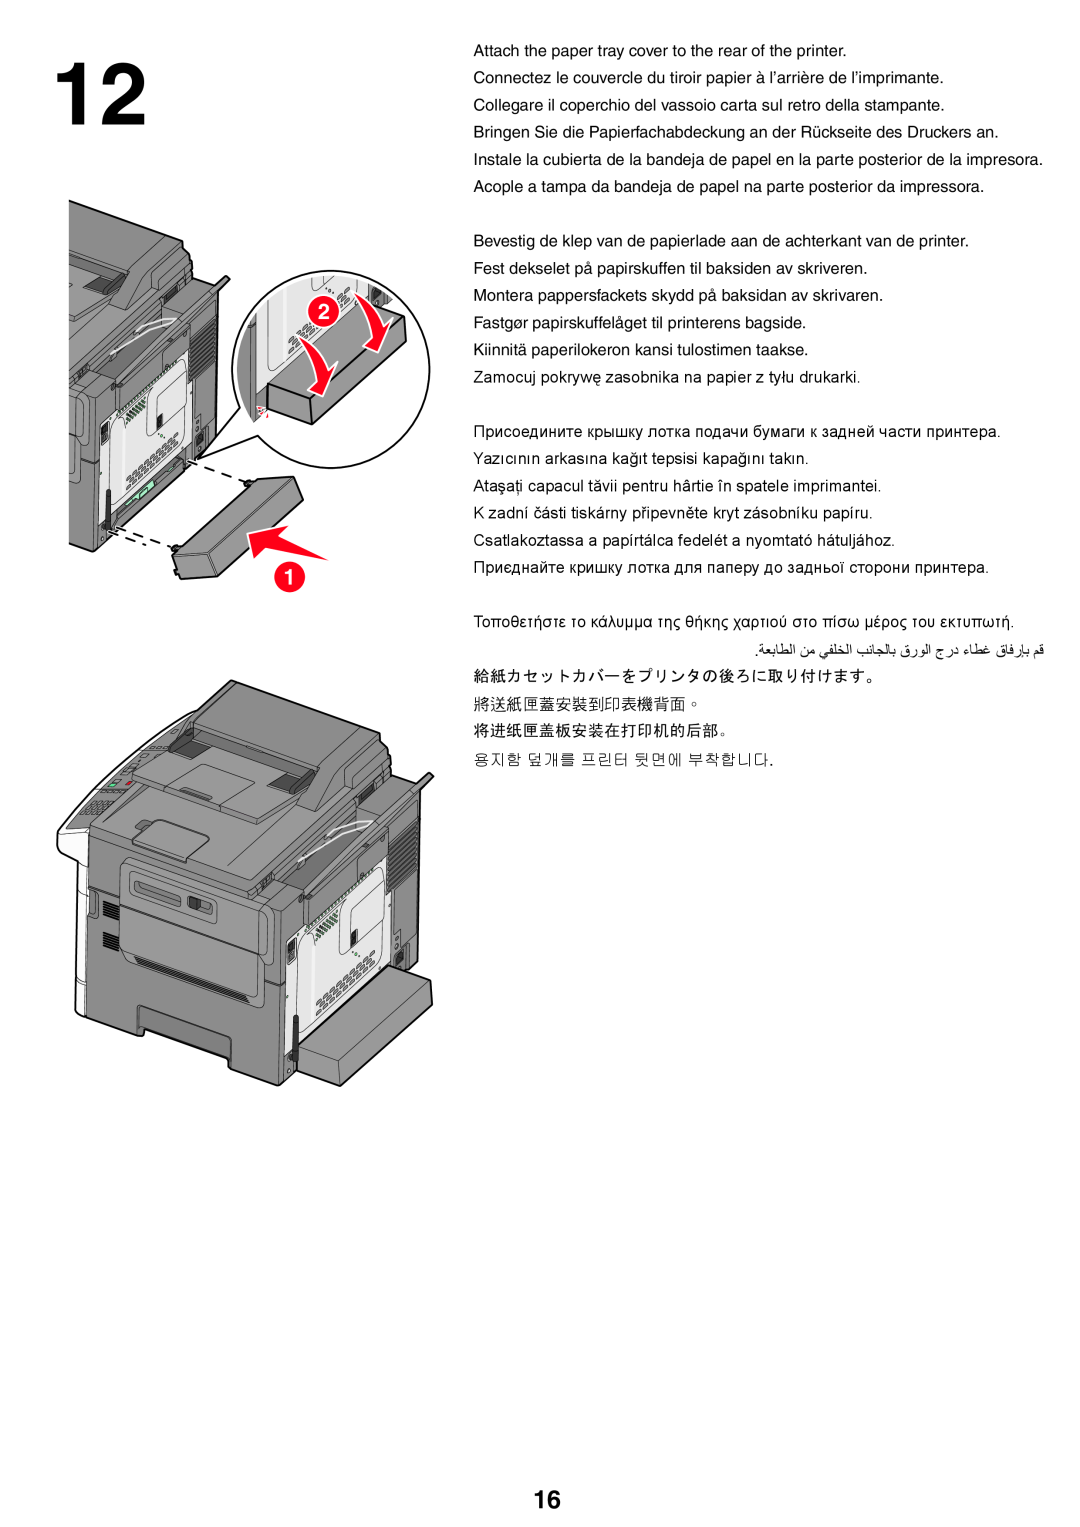 Lexmark X54x setup guide Fastgør papirskuffelåget til printerens bagside 